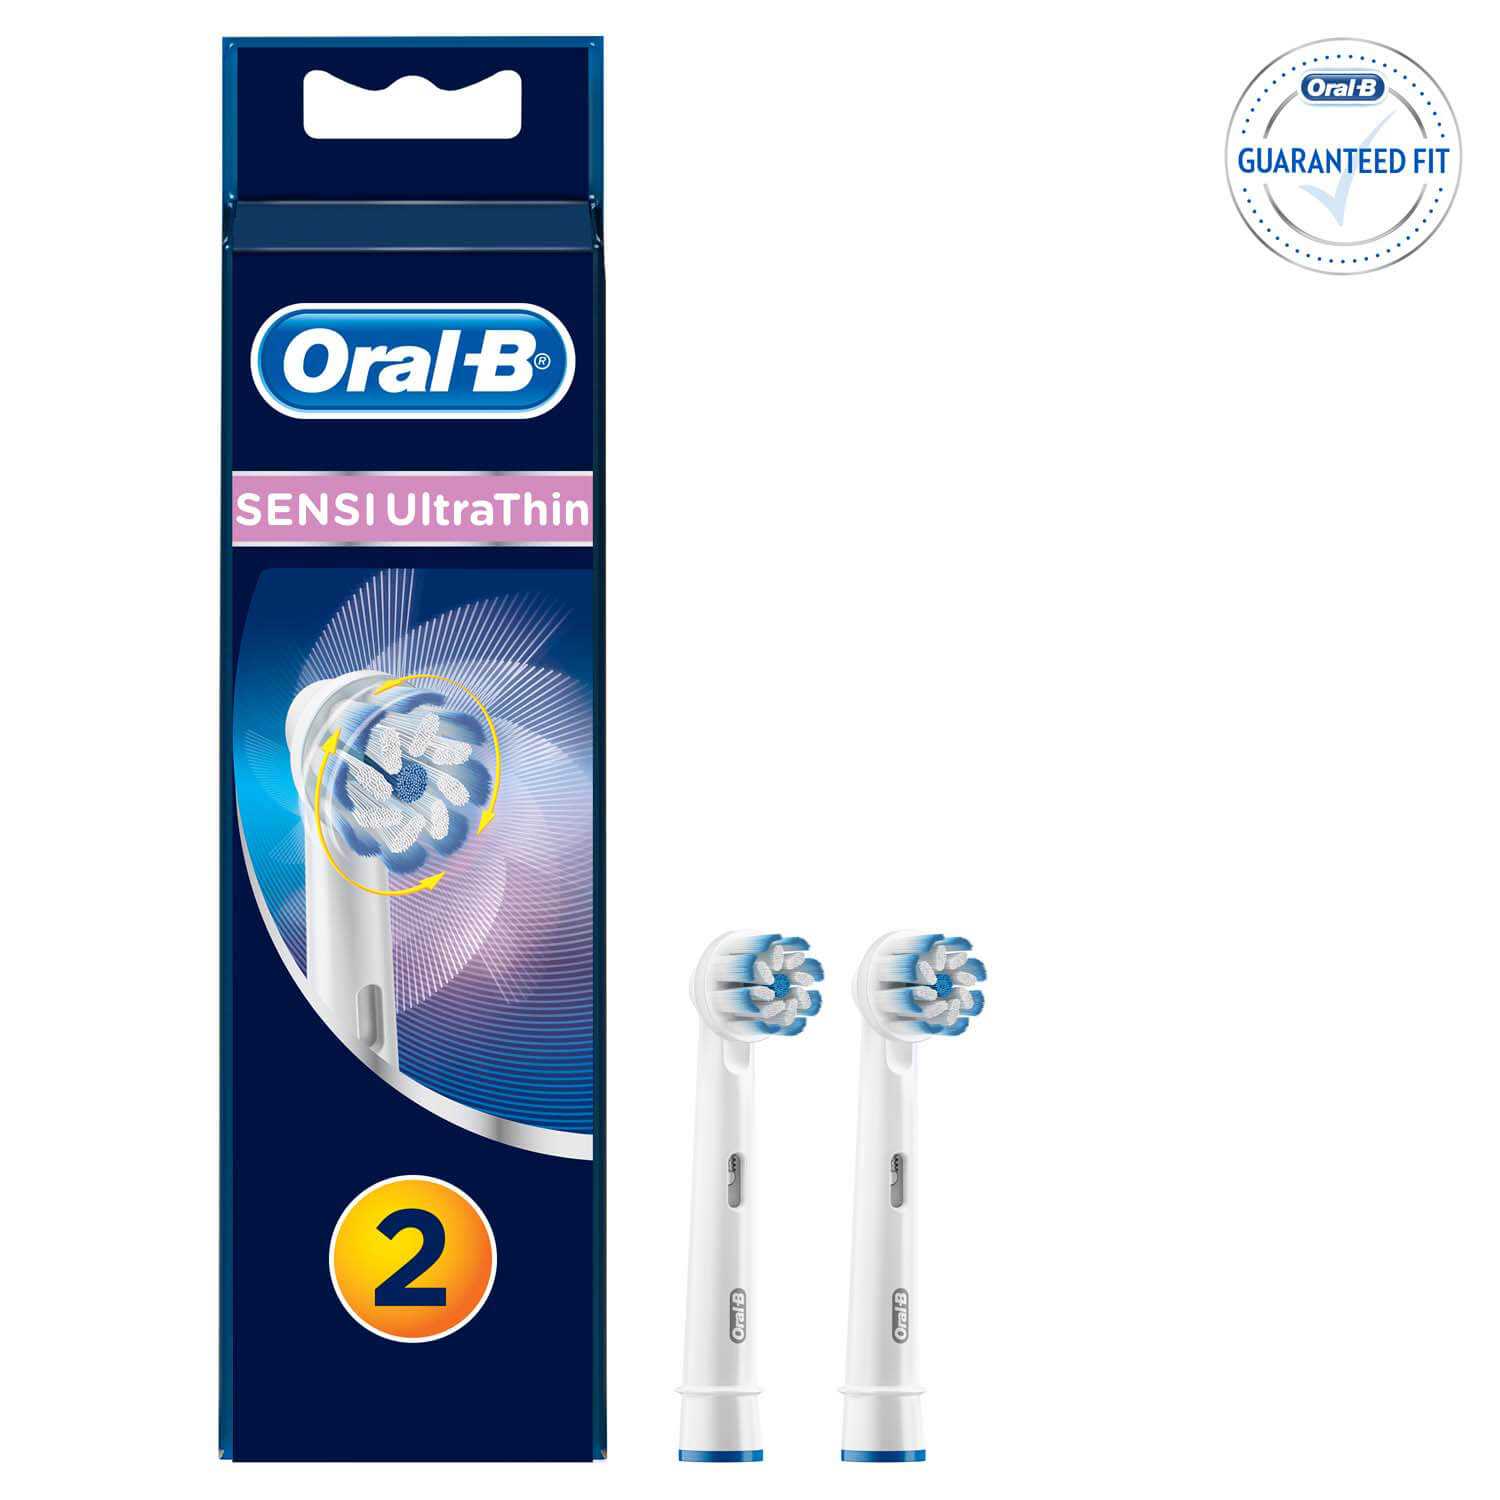 Сменные насадки для электрических зубных щеток Oral-B Sensi Ultra Thin, 2 шт.